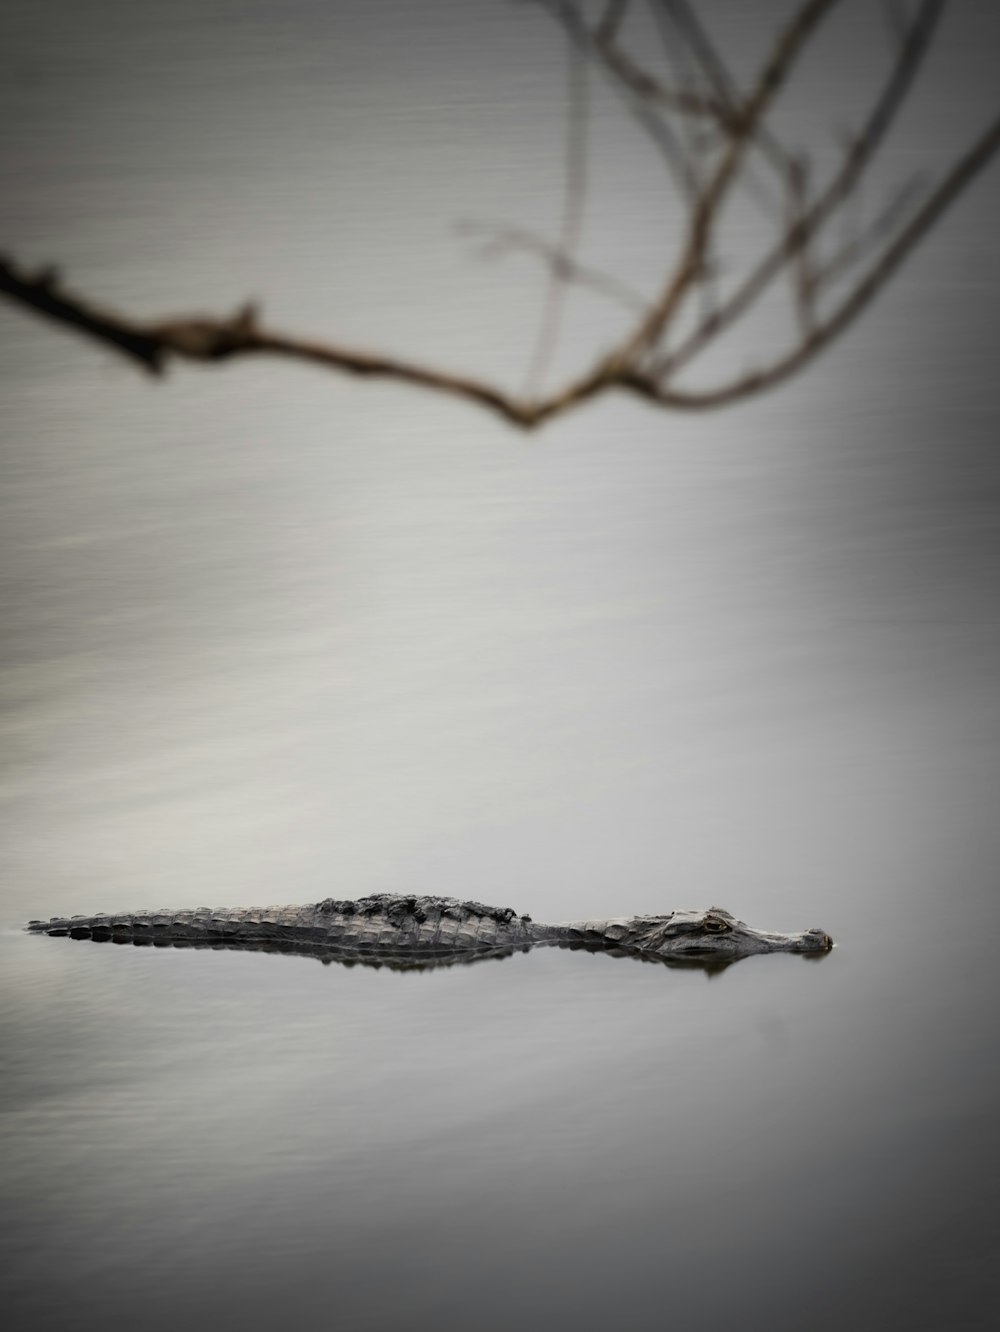 Ein kleiner Alligator schwimmt im Wasser